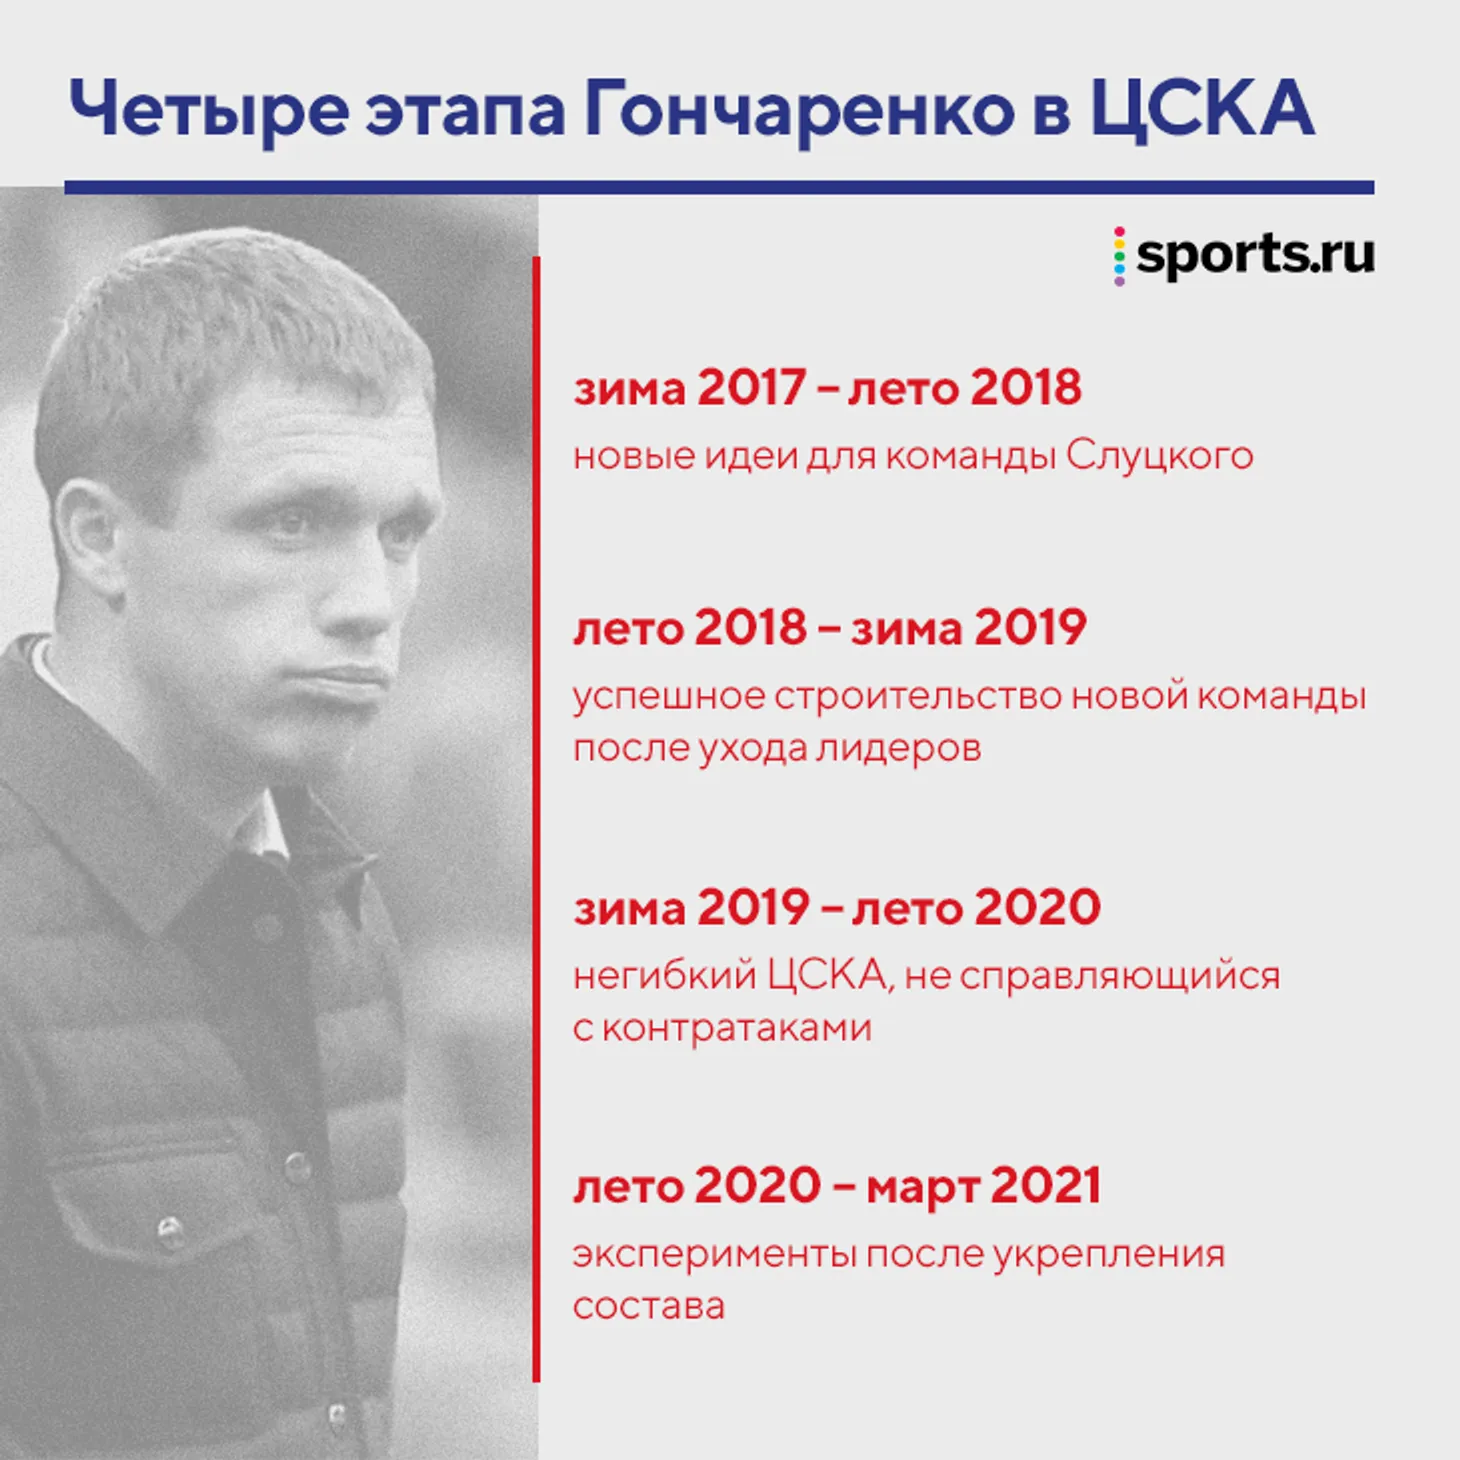 Четыре этапа Гончаренко в ЦСКА: перезапустил команду Слуцкого, выдал яркую осень 2018-го, мучился с контратаками и запутался после прихода ВЭБ